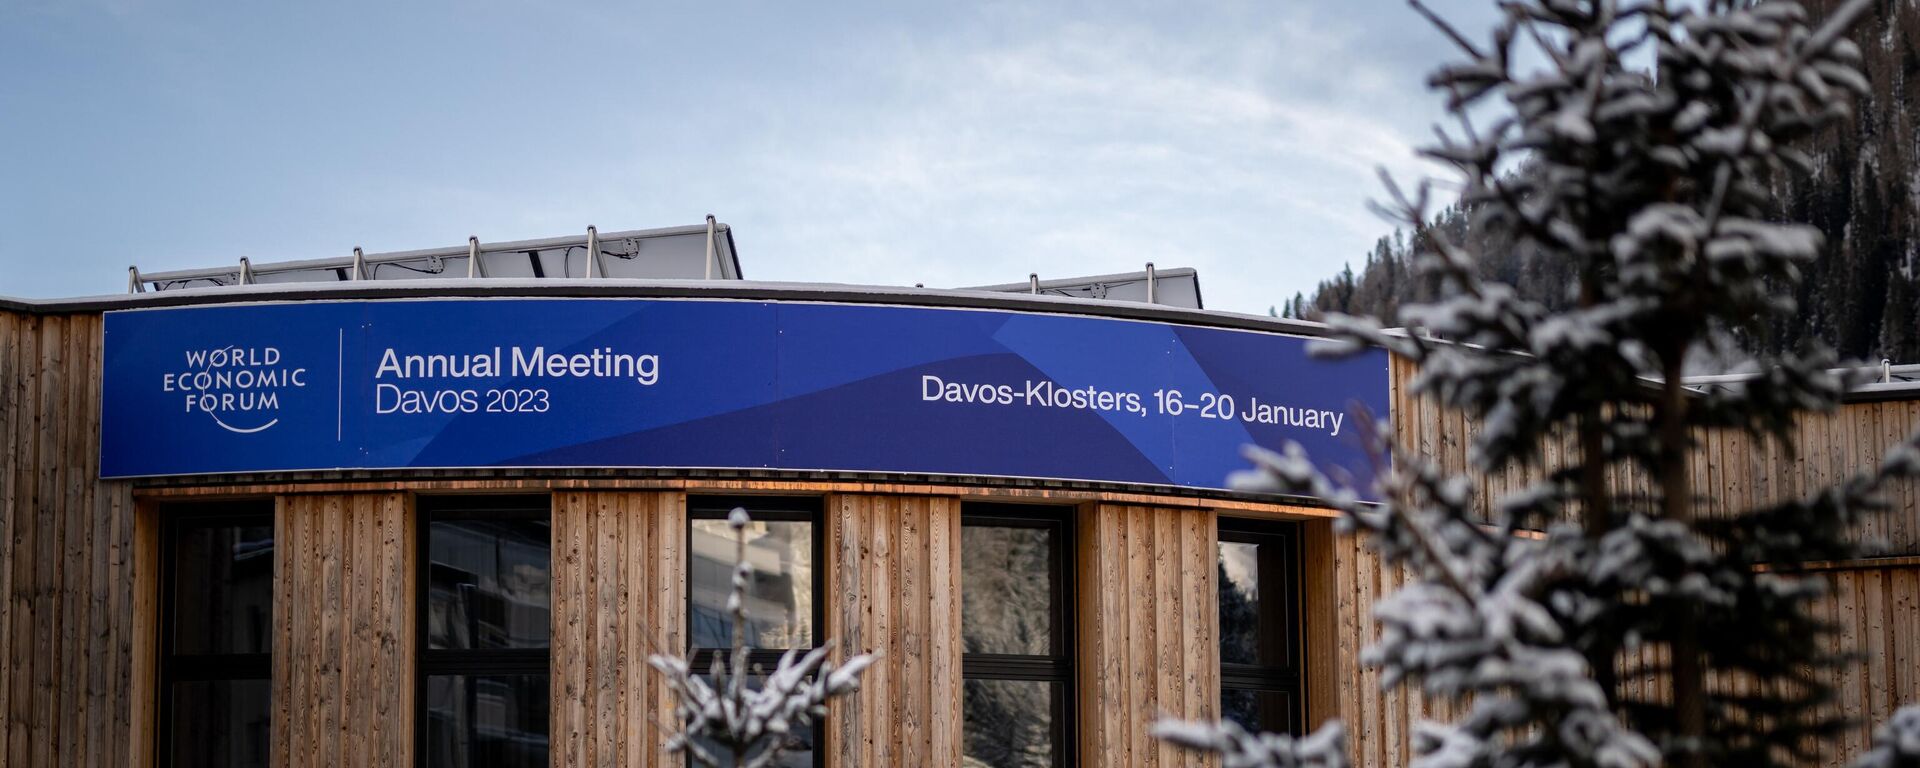 Dünya Ekonomik Forumu Davos'ta başladı - Sputnik Türkiye, 1920, 16.01.2023